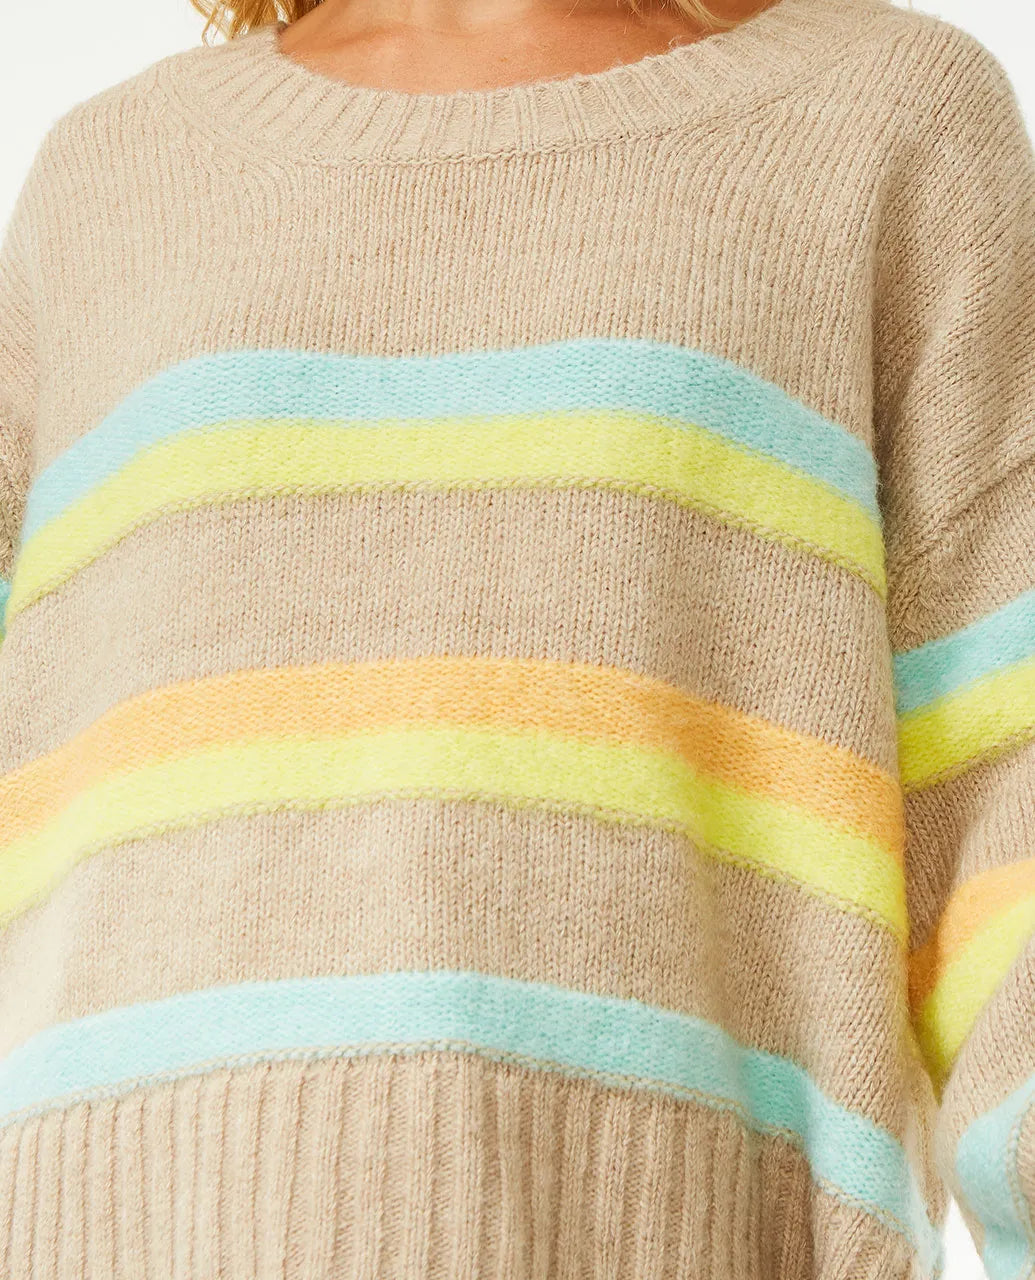 Sea of Dreams Stripe Sweater - Rip Curl - Beechworth Emporium